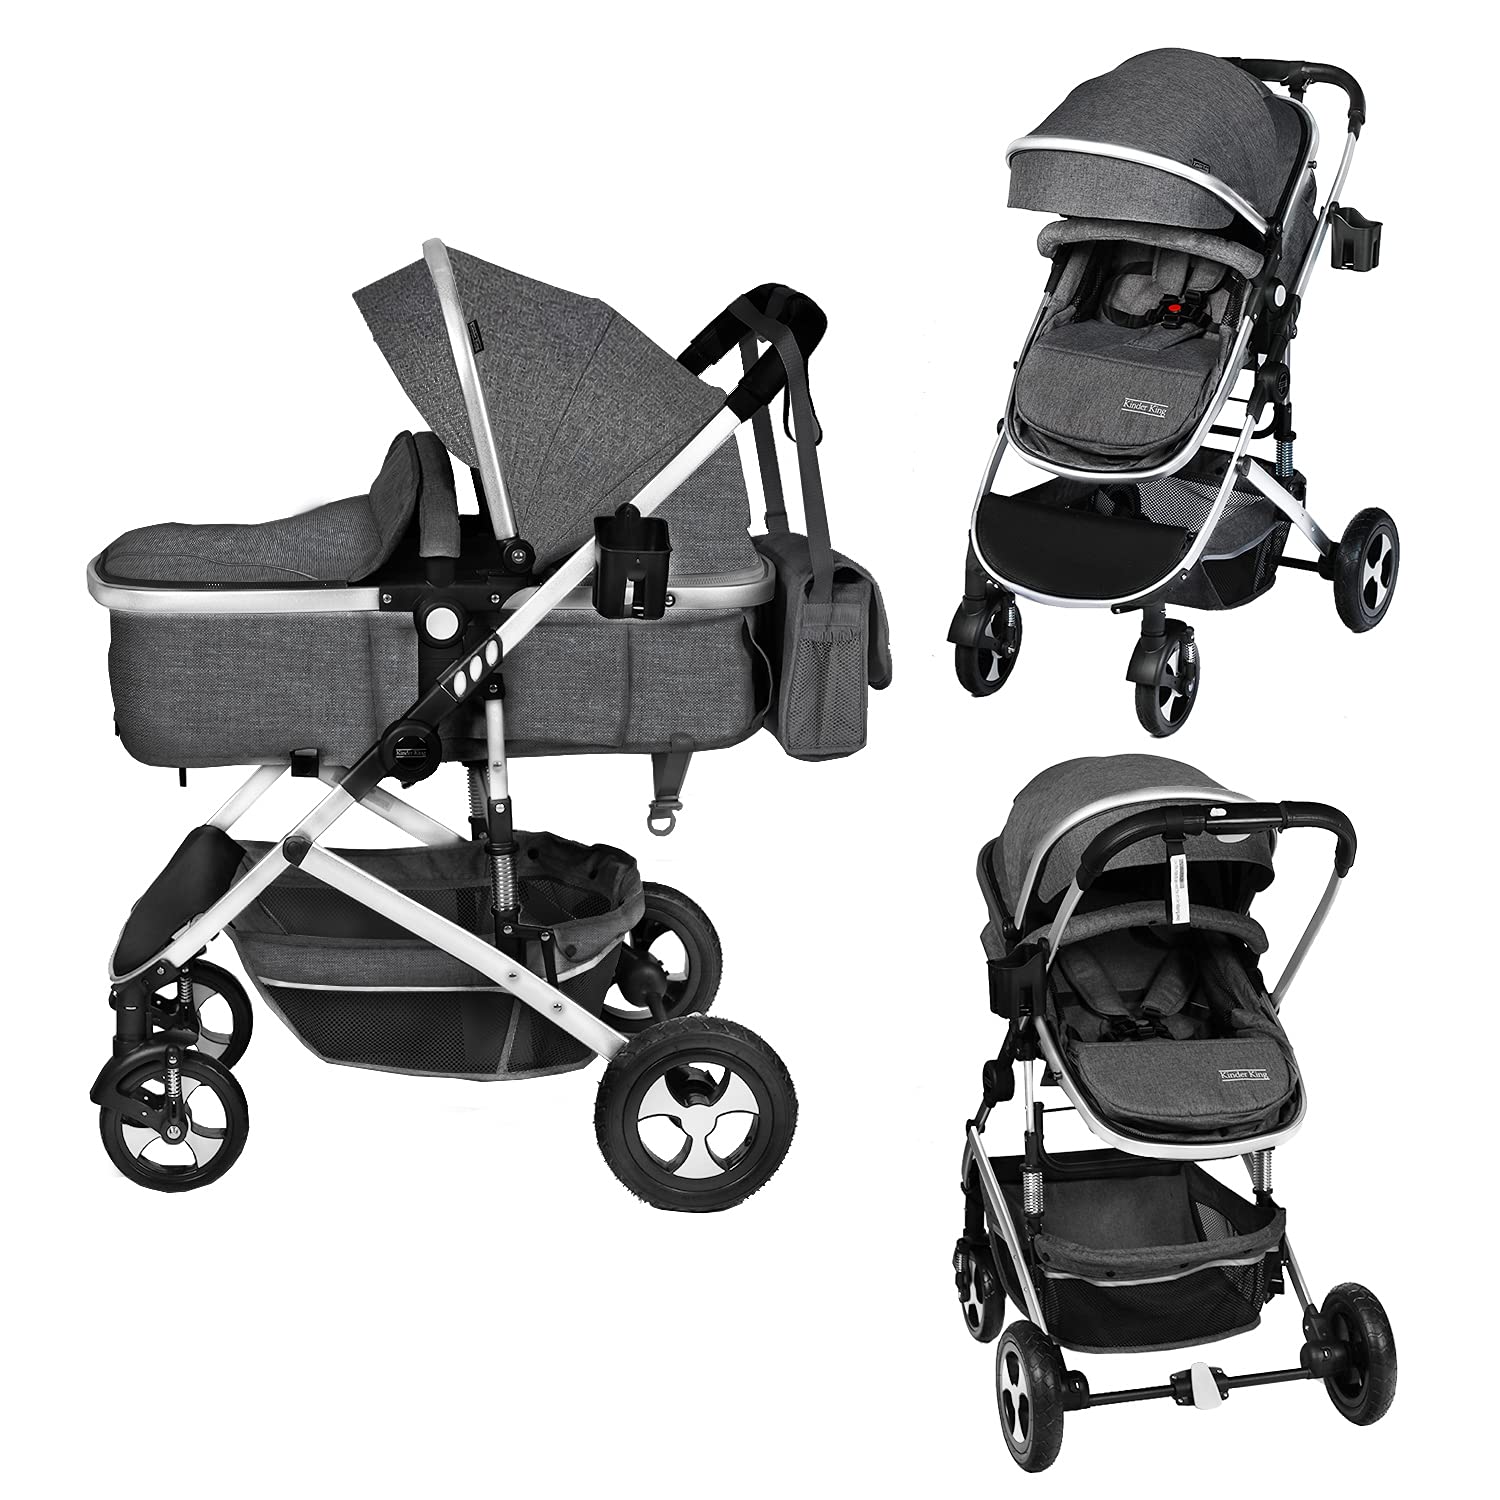 Kinder King 2 in 1 convertible Baby Stroller, Folding High Landscape Infant carriage, Newborn Reversible Bassinet Pram, Adjustab